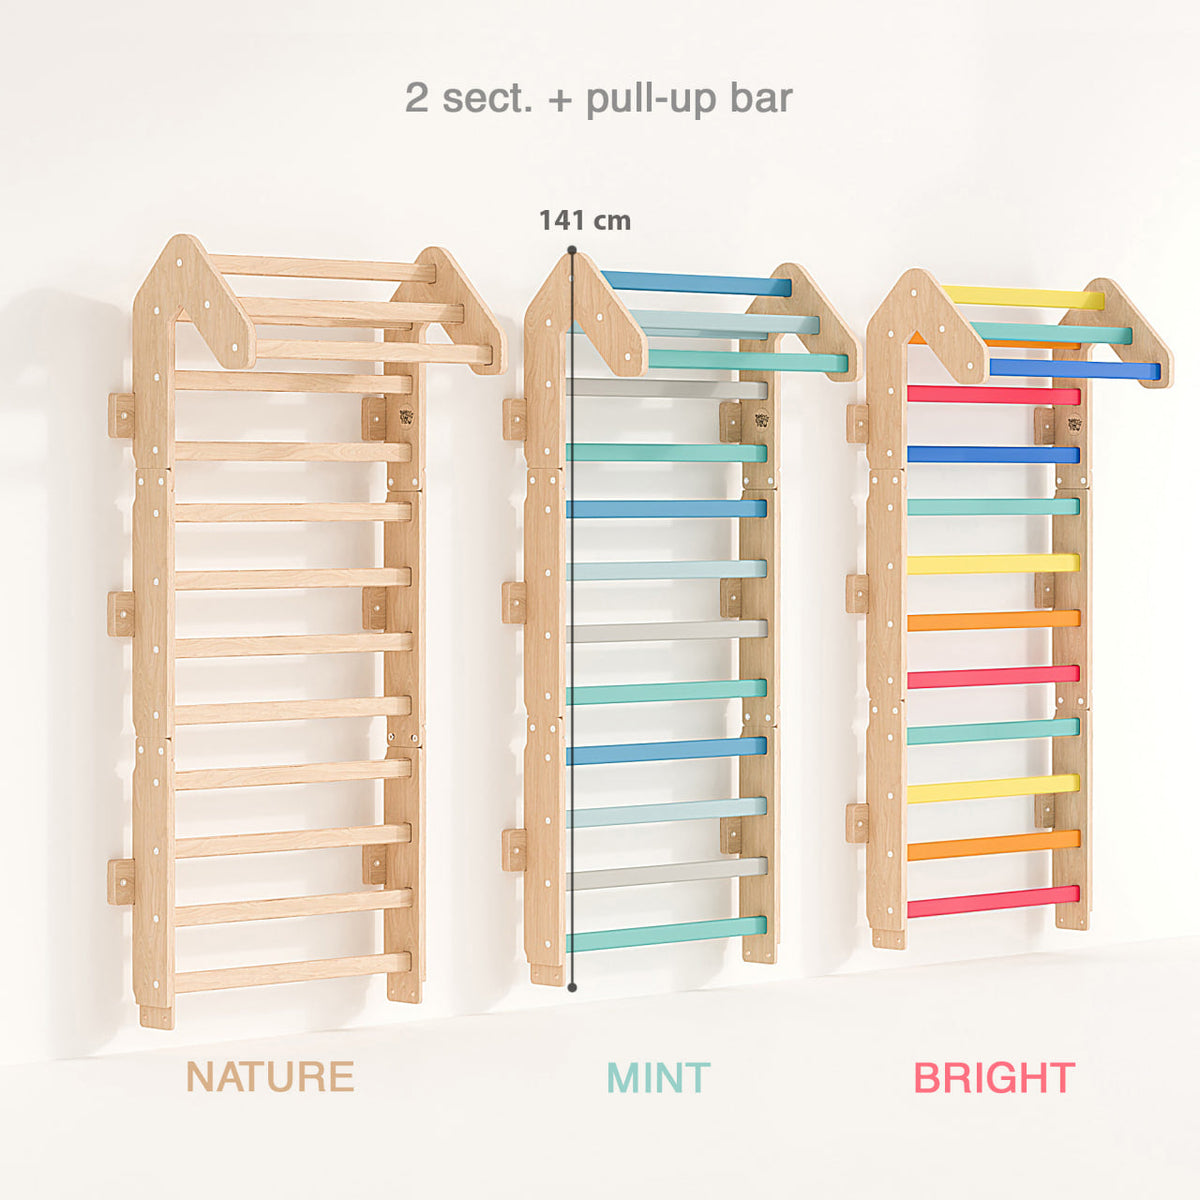 Wall bars for children Mini - Light 